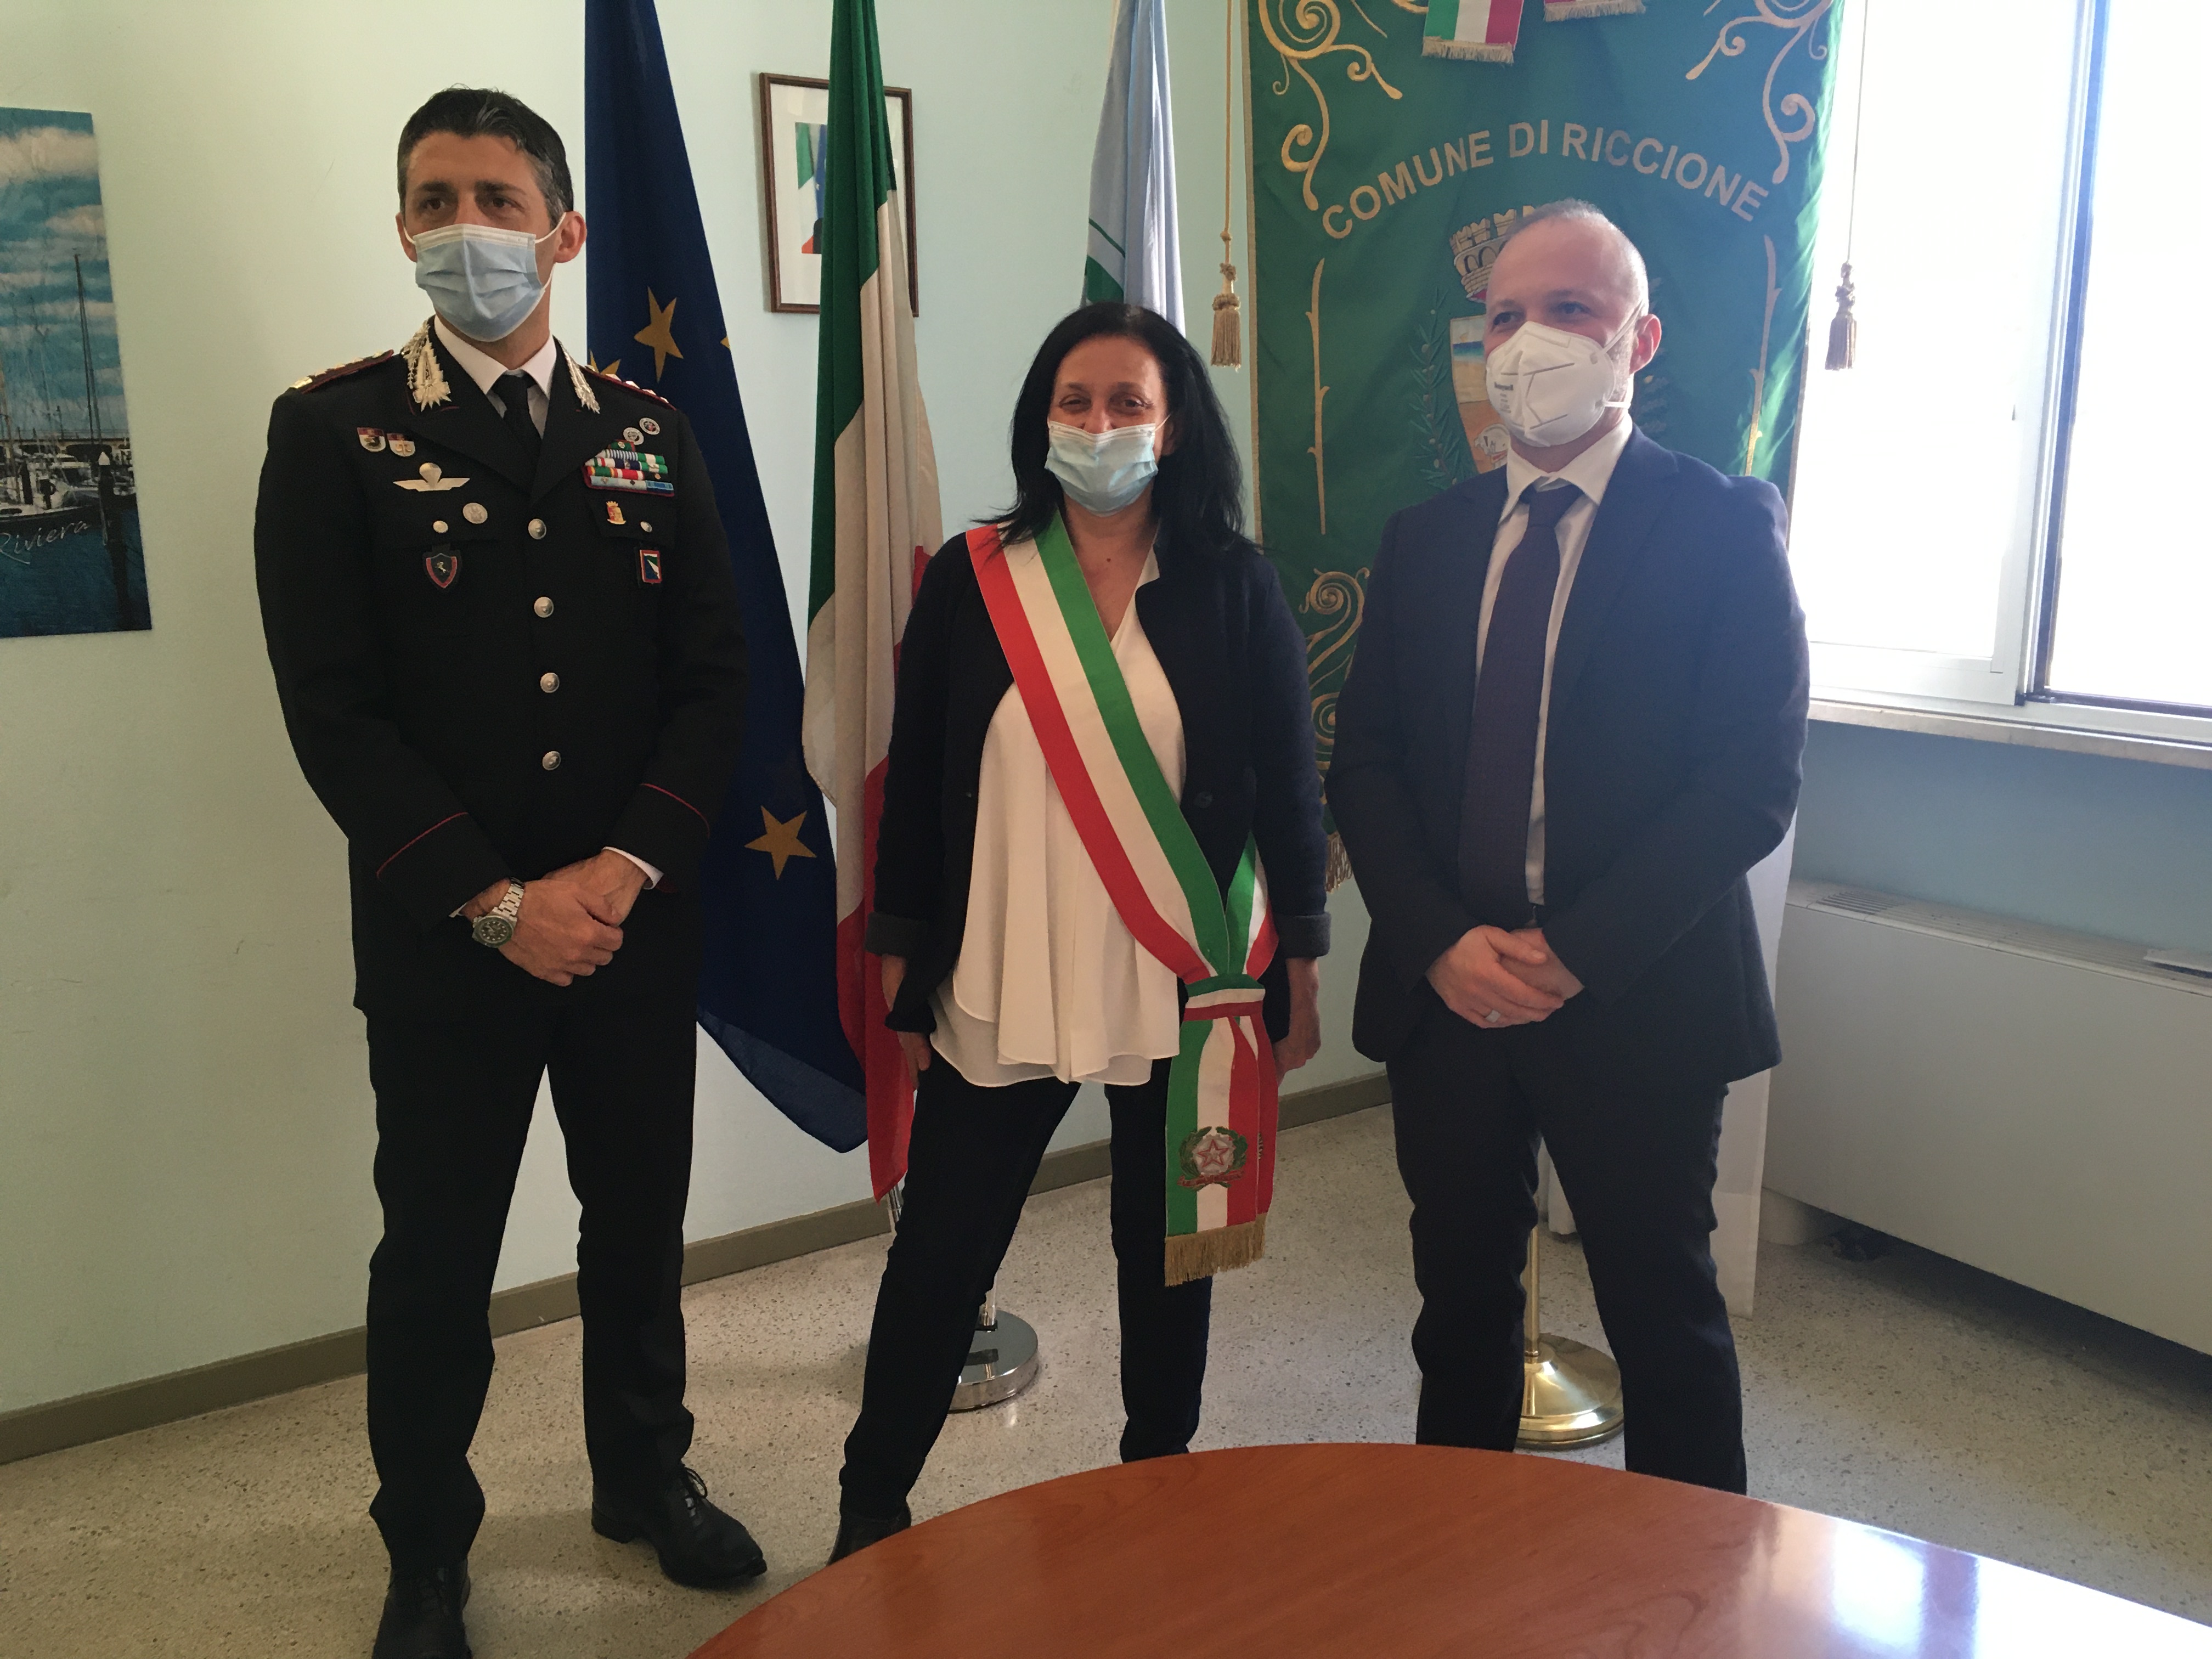 Il comandante provinciale dei carabinieri, colonnello Mario La Mura, il sindaco di Riccione, Renata Tosi e il direttore regionale Agenzia del Demanio, Massimiliano Iannelli